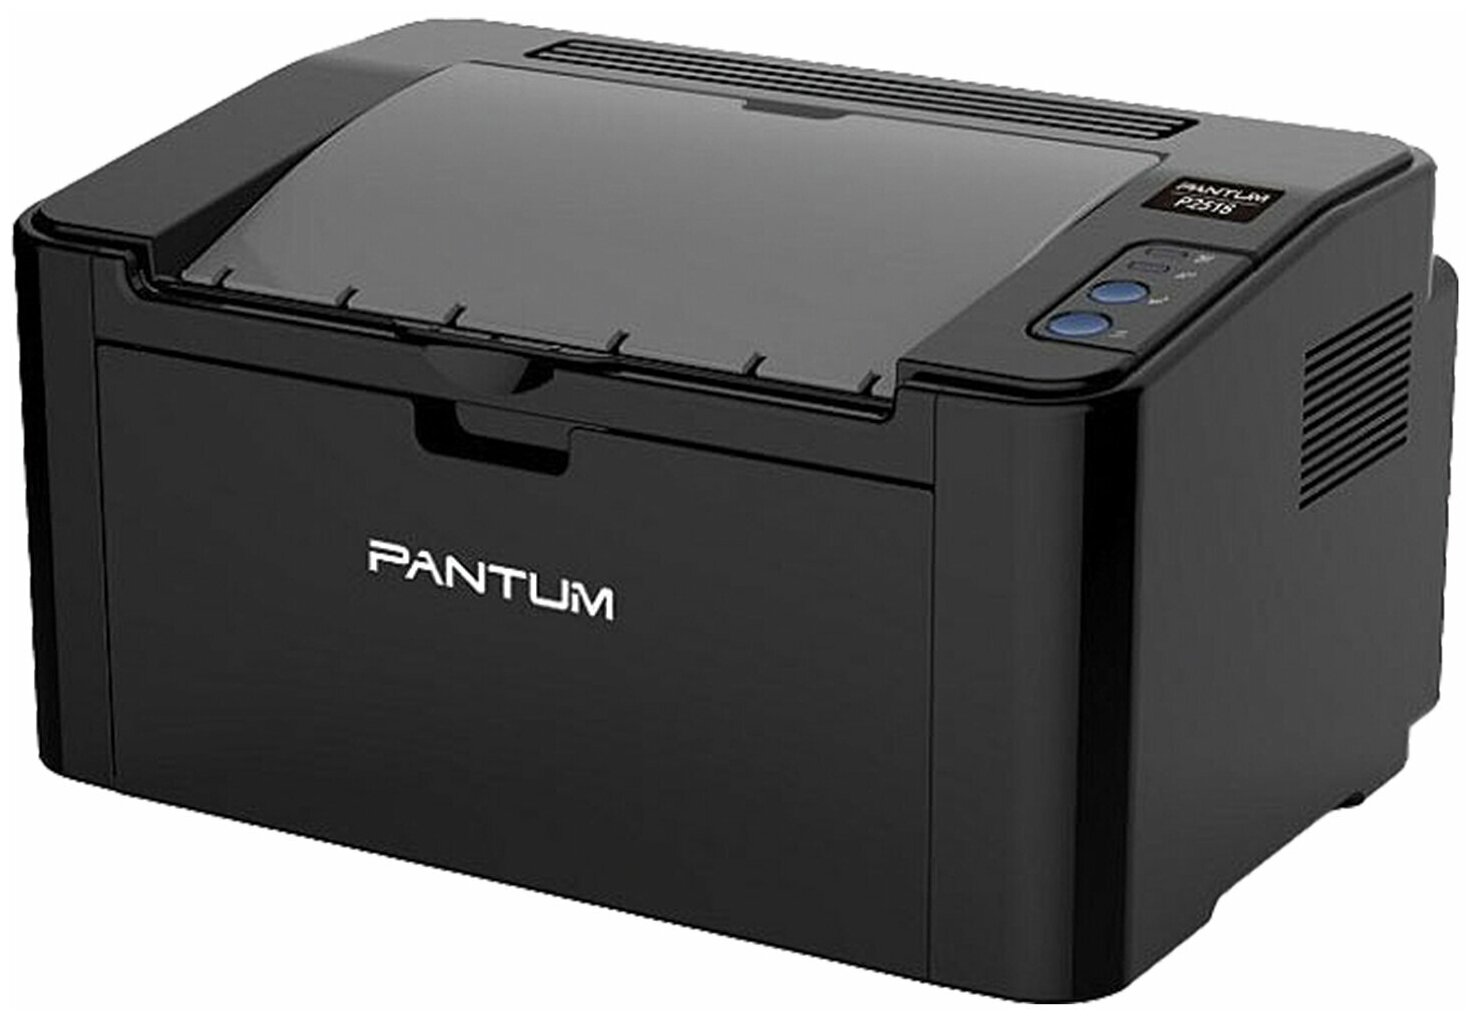 Принтер лазерный PANTUM P2516 А4, 22 стр./мин, 15000 стр./мес. - 1 шт.